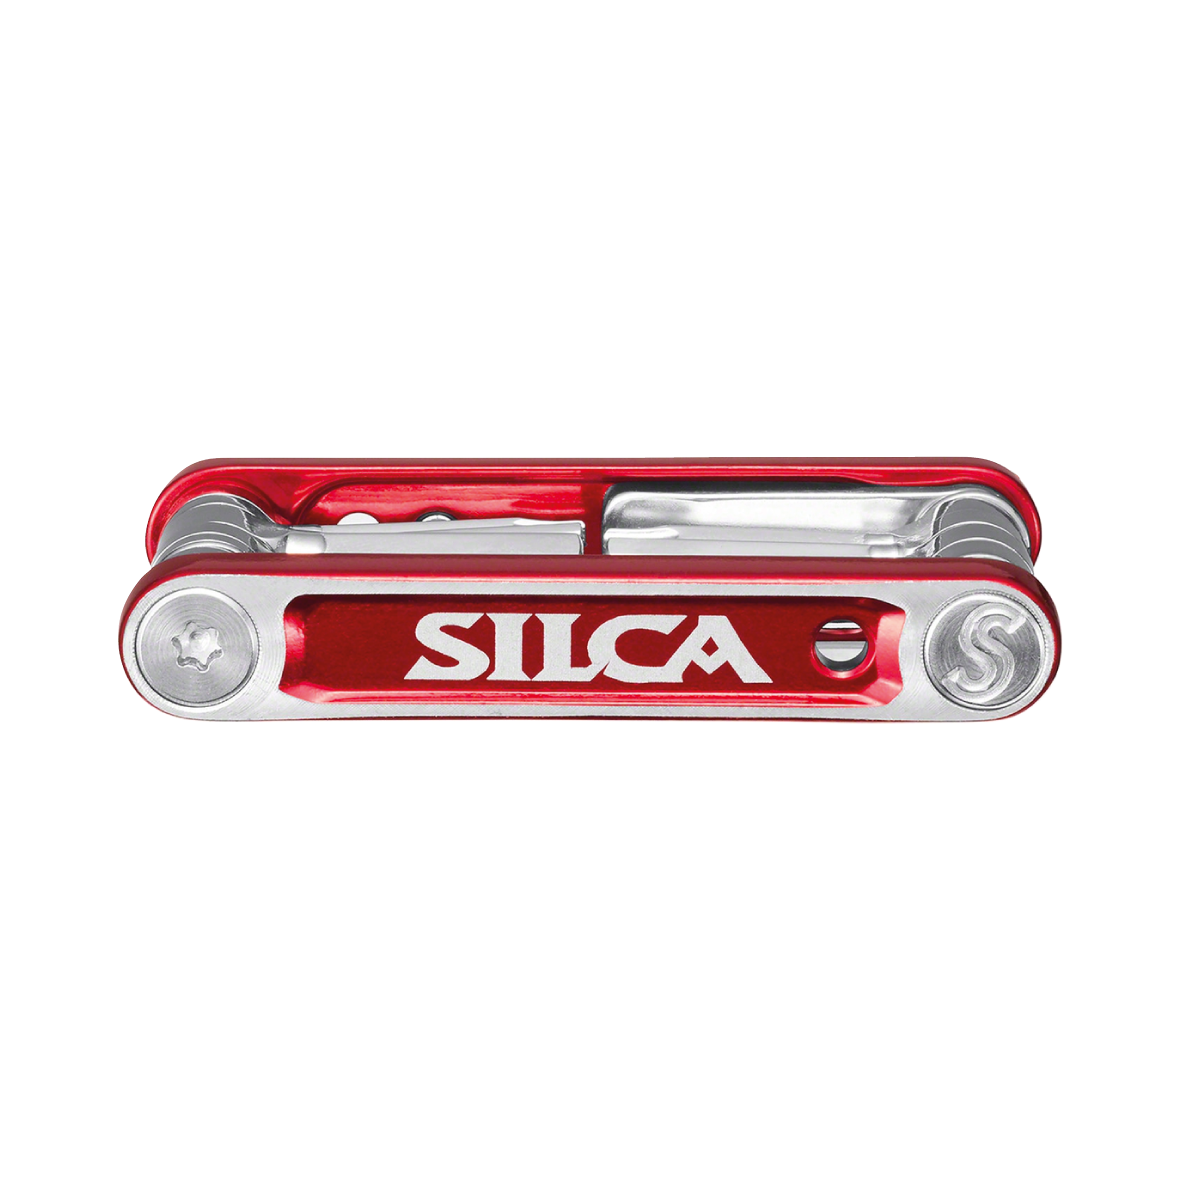 Supreme Silca Bike Tool